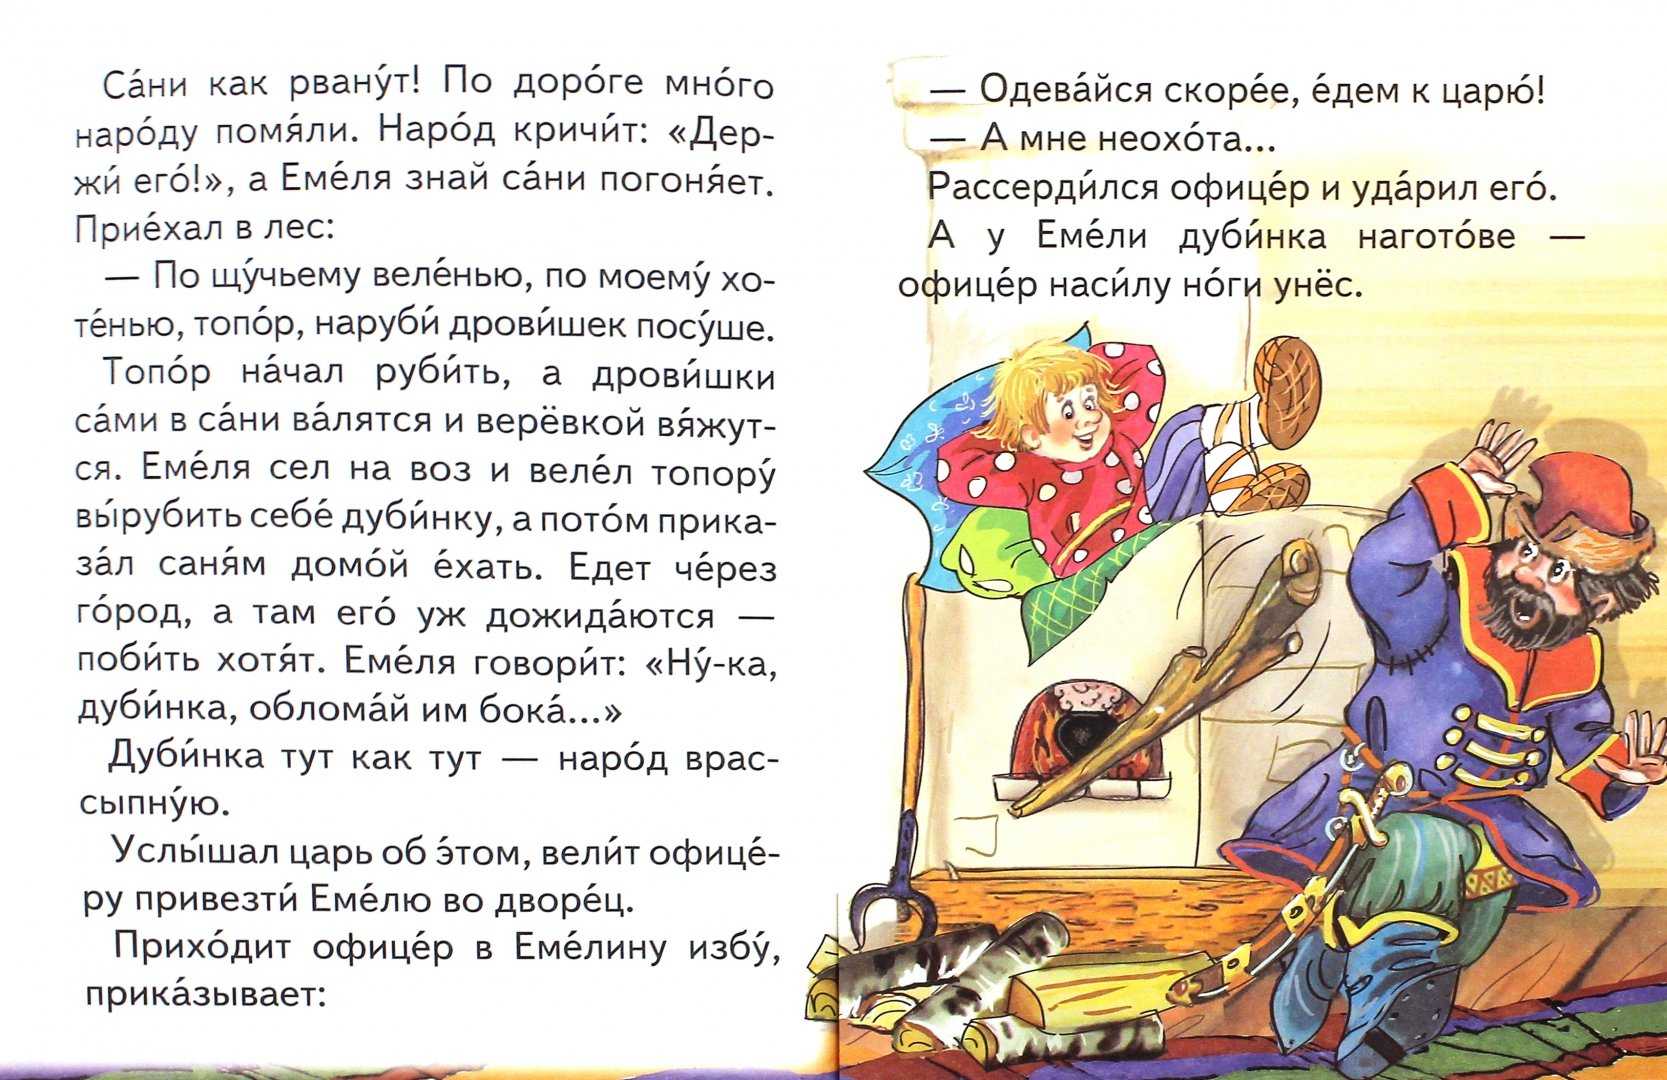 Читать сказку сказки о шише: шиш—сказочник - русская сказка, онлайн бесплатно с иллюстрациями.